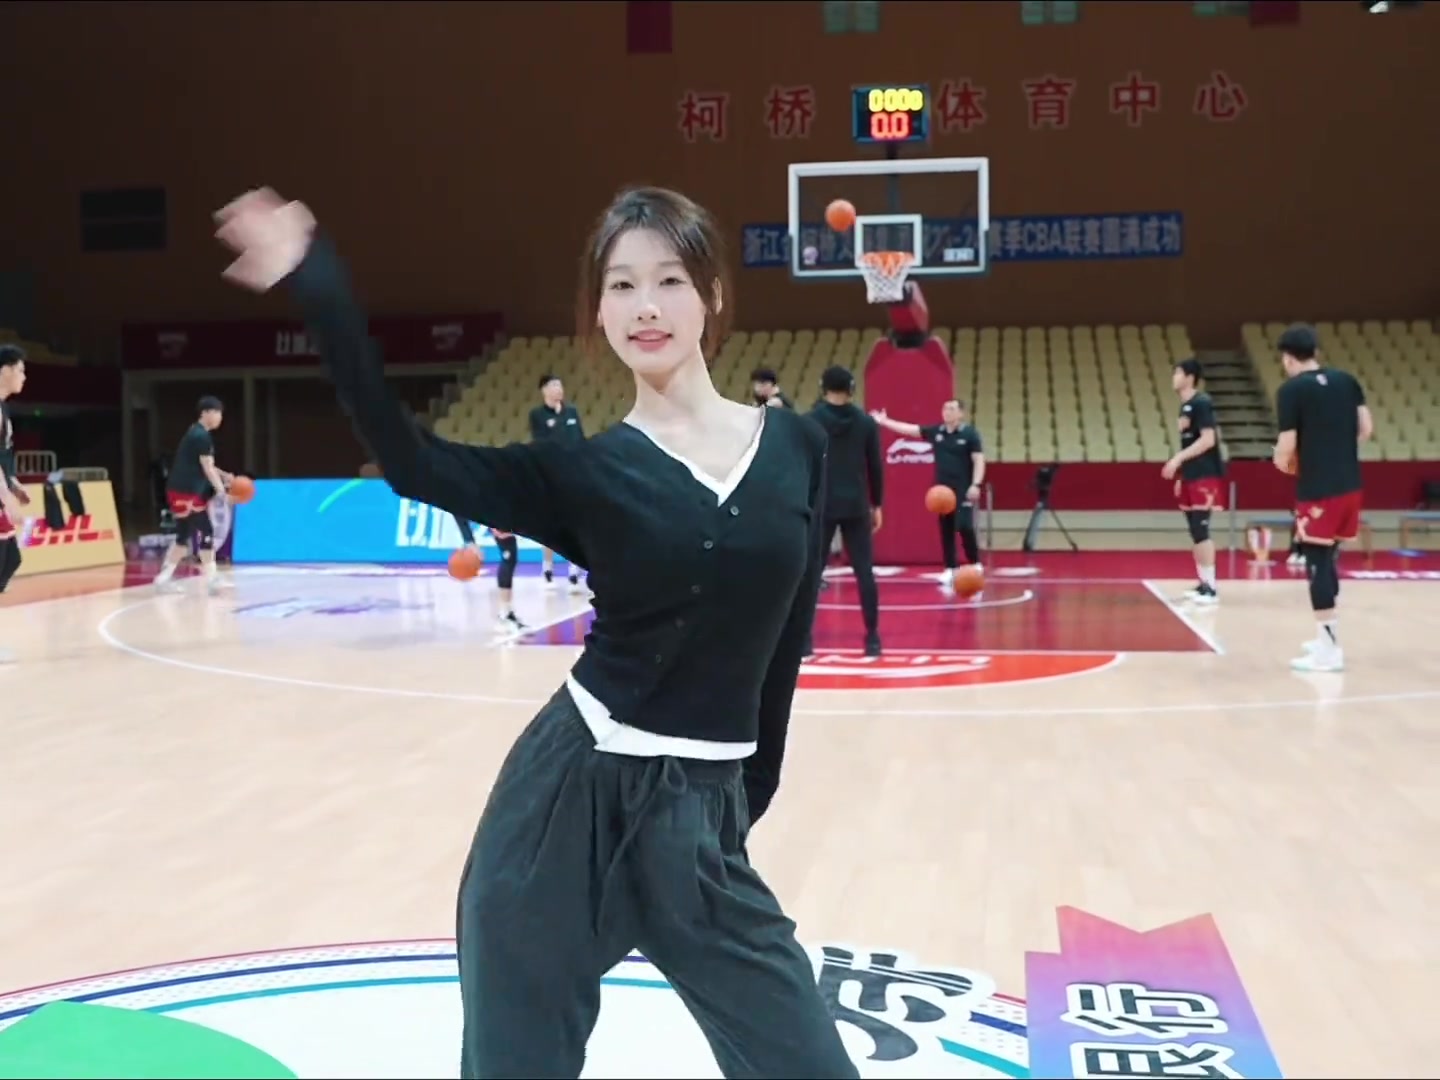 浙江球员赛前投篮热身 美女啦啦队在一旁热舞